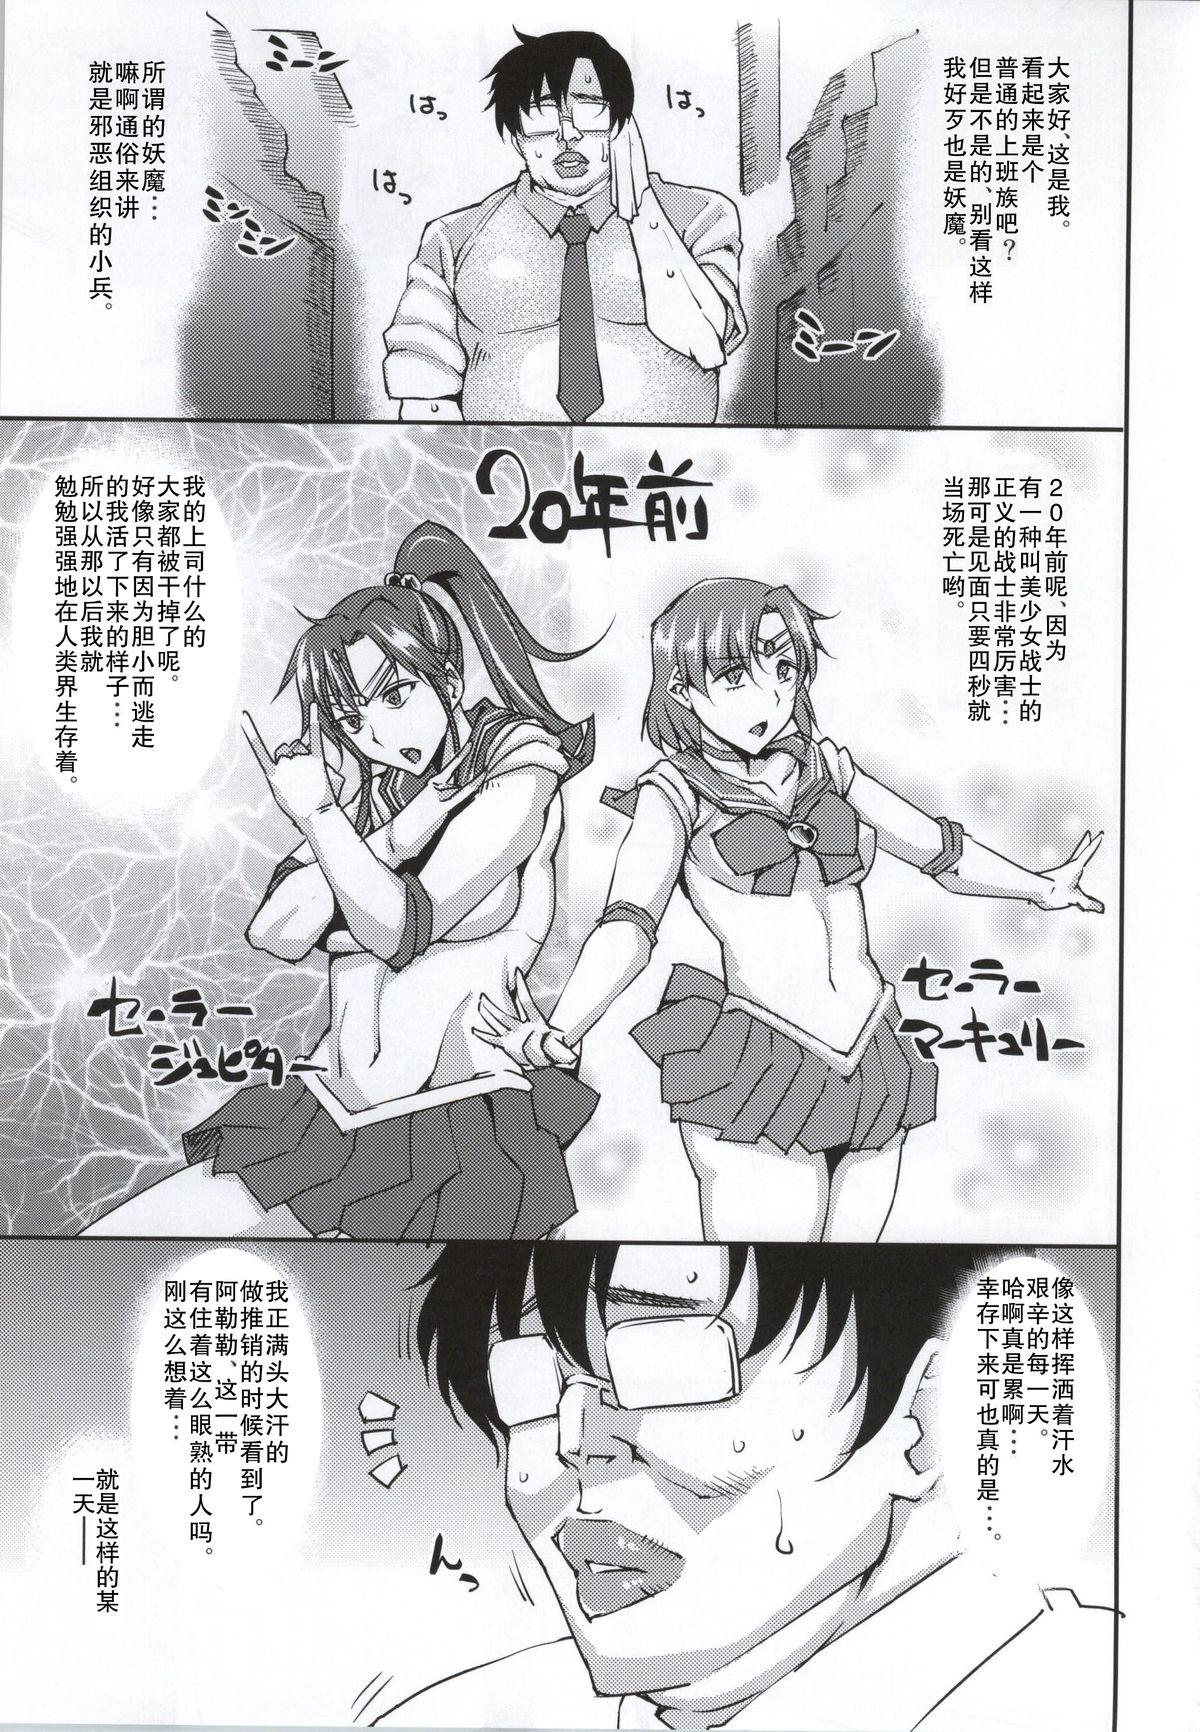 Sensual 20 Nengo no, Sailor Senshi o Kakyuu Youma no Ore ga Netoru. - Sailor moon Stepbrother - Page 2